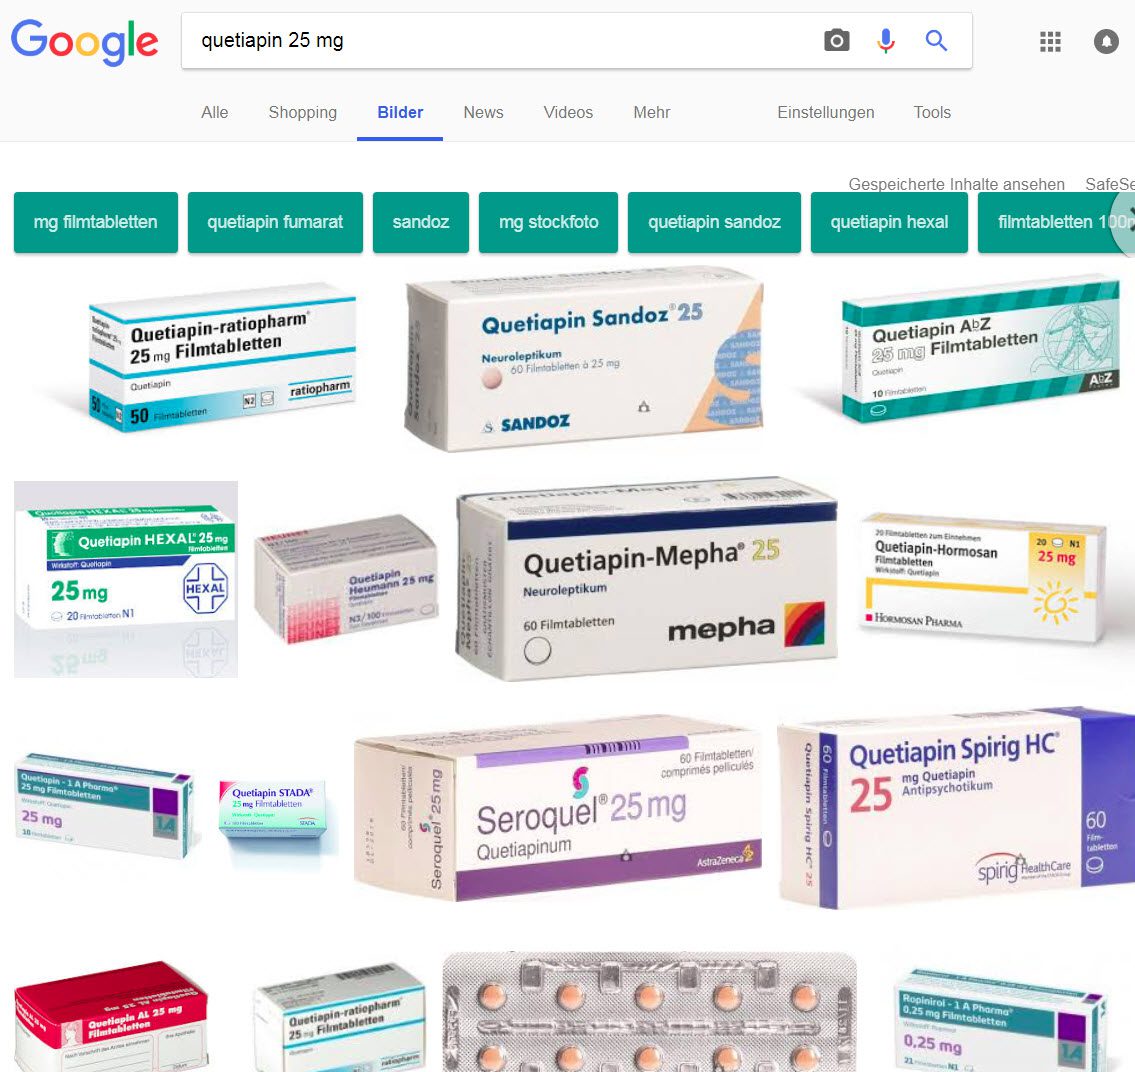 Quetiapin 25 mg - eine Google-Bildersuche zeigt die verschiedenen Hersteller wie Sandoz, Ratiopharm, Beta Pharm, Hexal und Co...